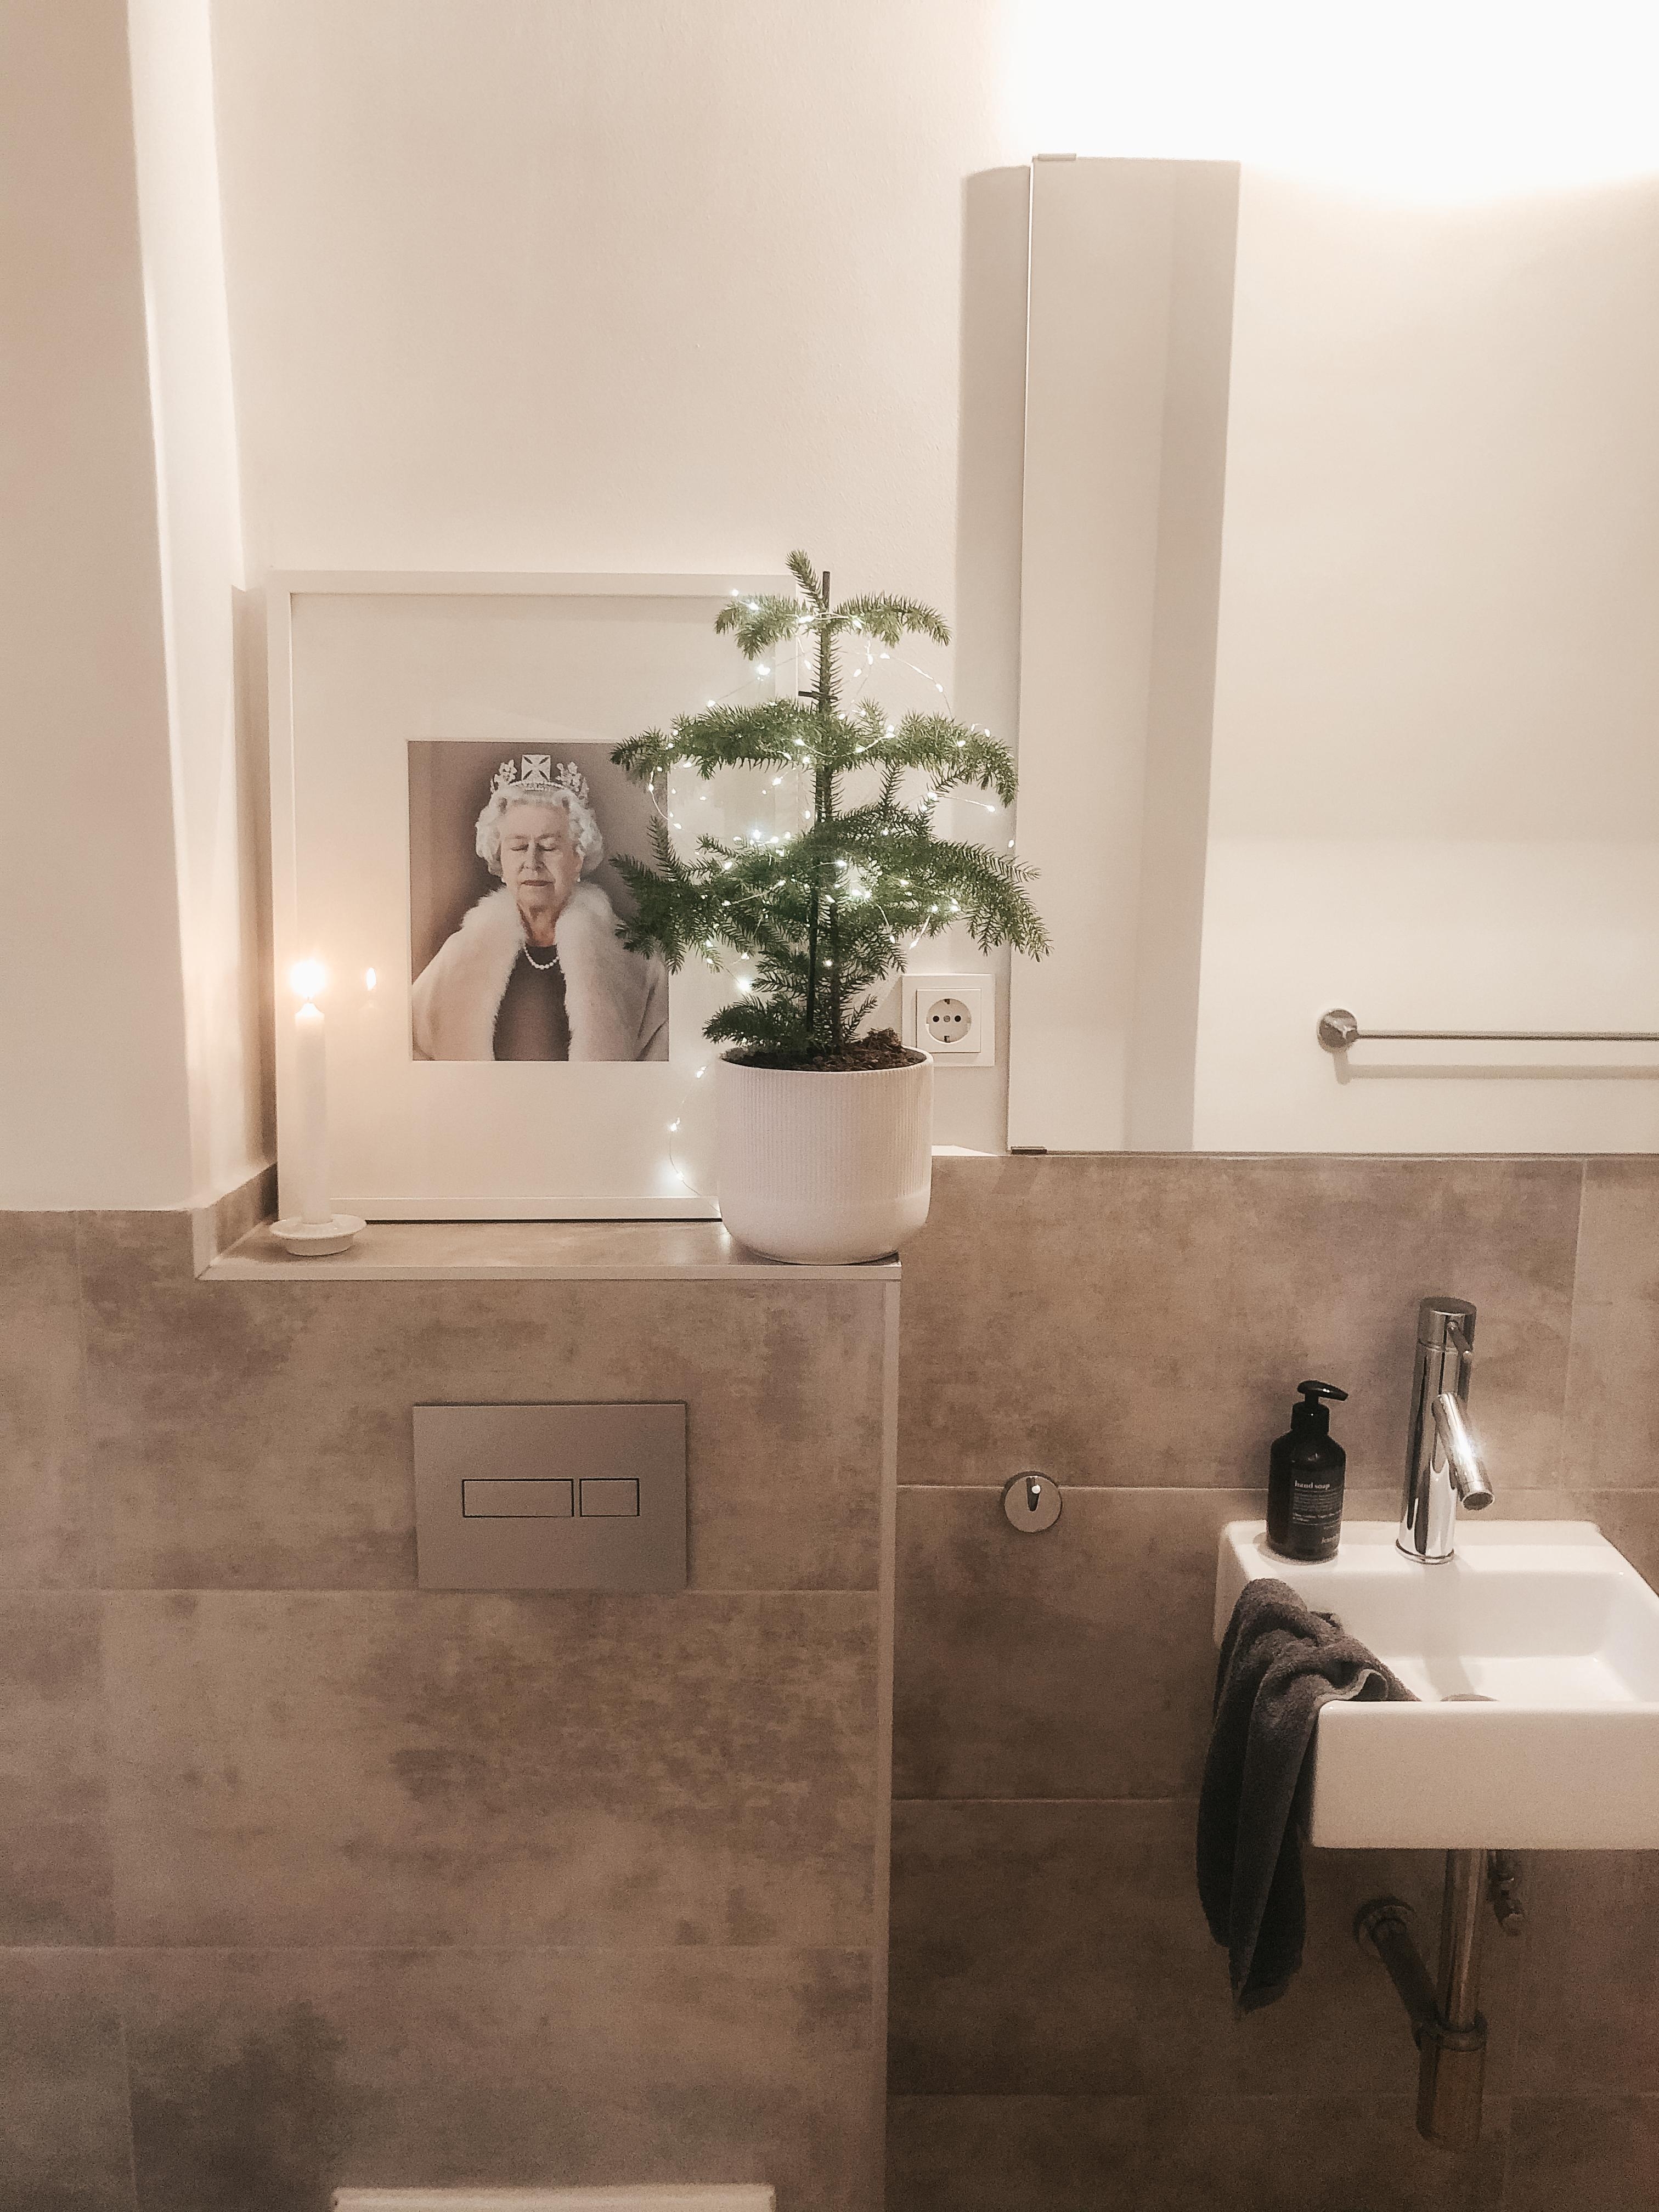 Queenie‘s Christmas Bathroom
#weihnachtsdeko #xmasdeko